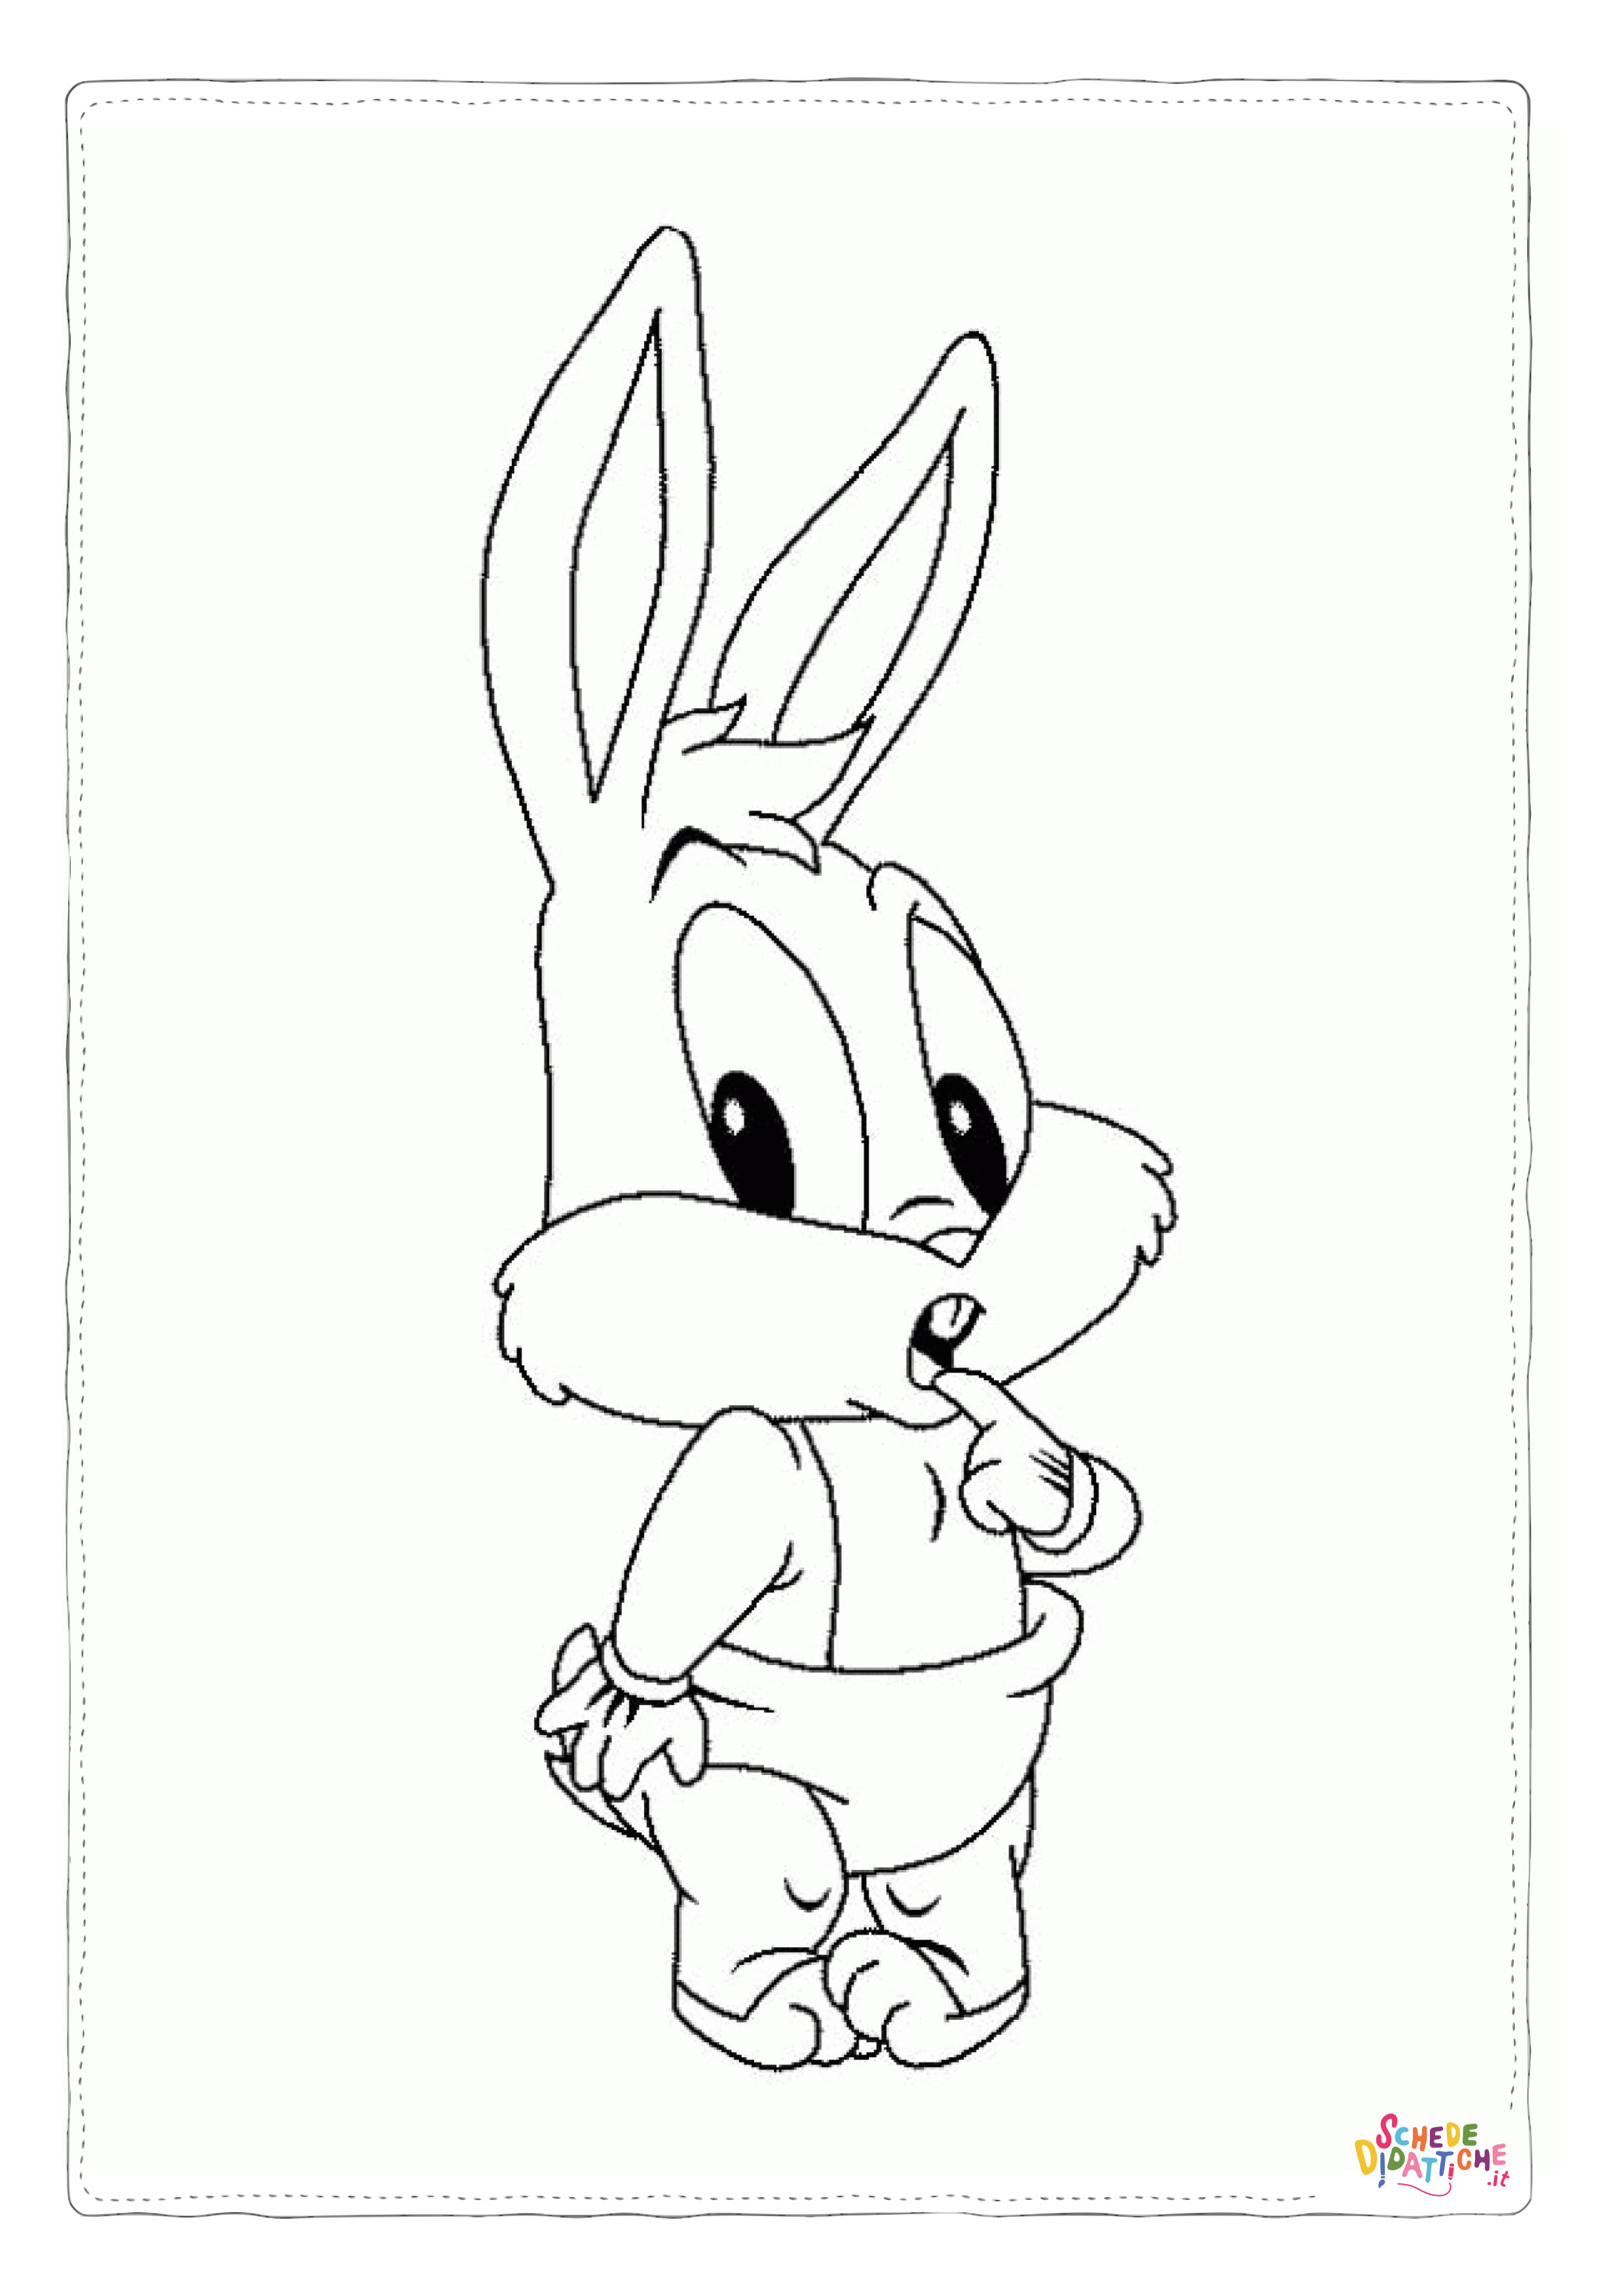 Disegno di Bugs Bunny da stampare e colorare